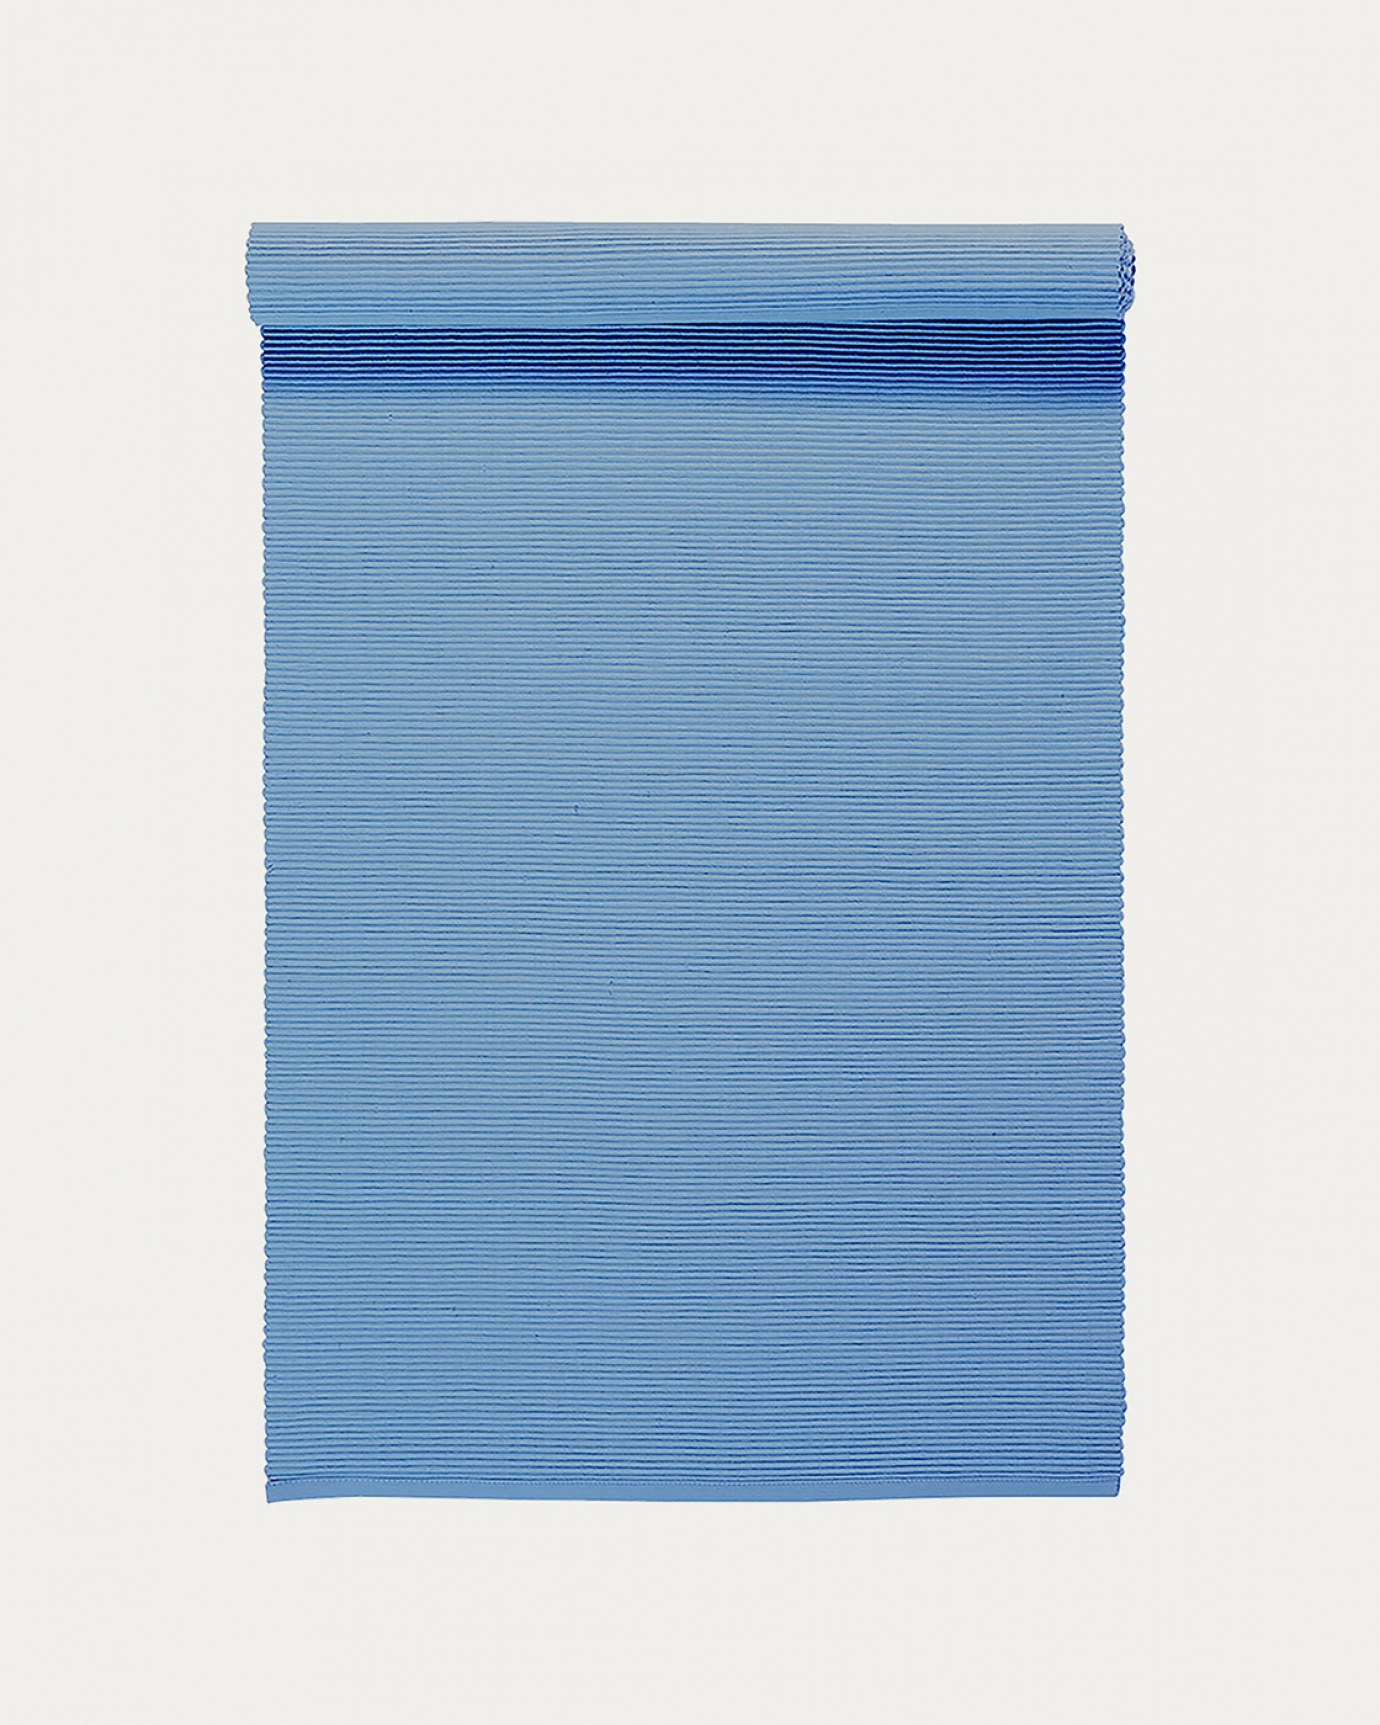 Image du produit chemin de table UNI bleu tonnerre clair en coton doux de qualité côtelée de LINUM DESIGN. Taille 45 x 150 cm.